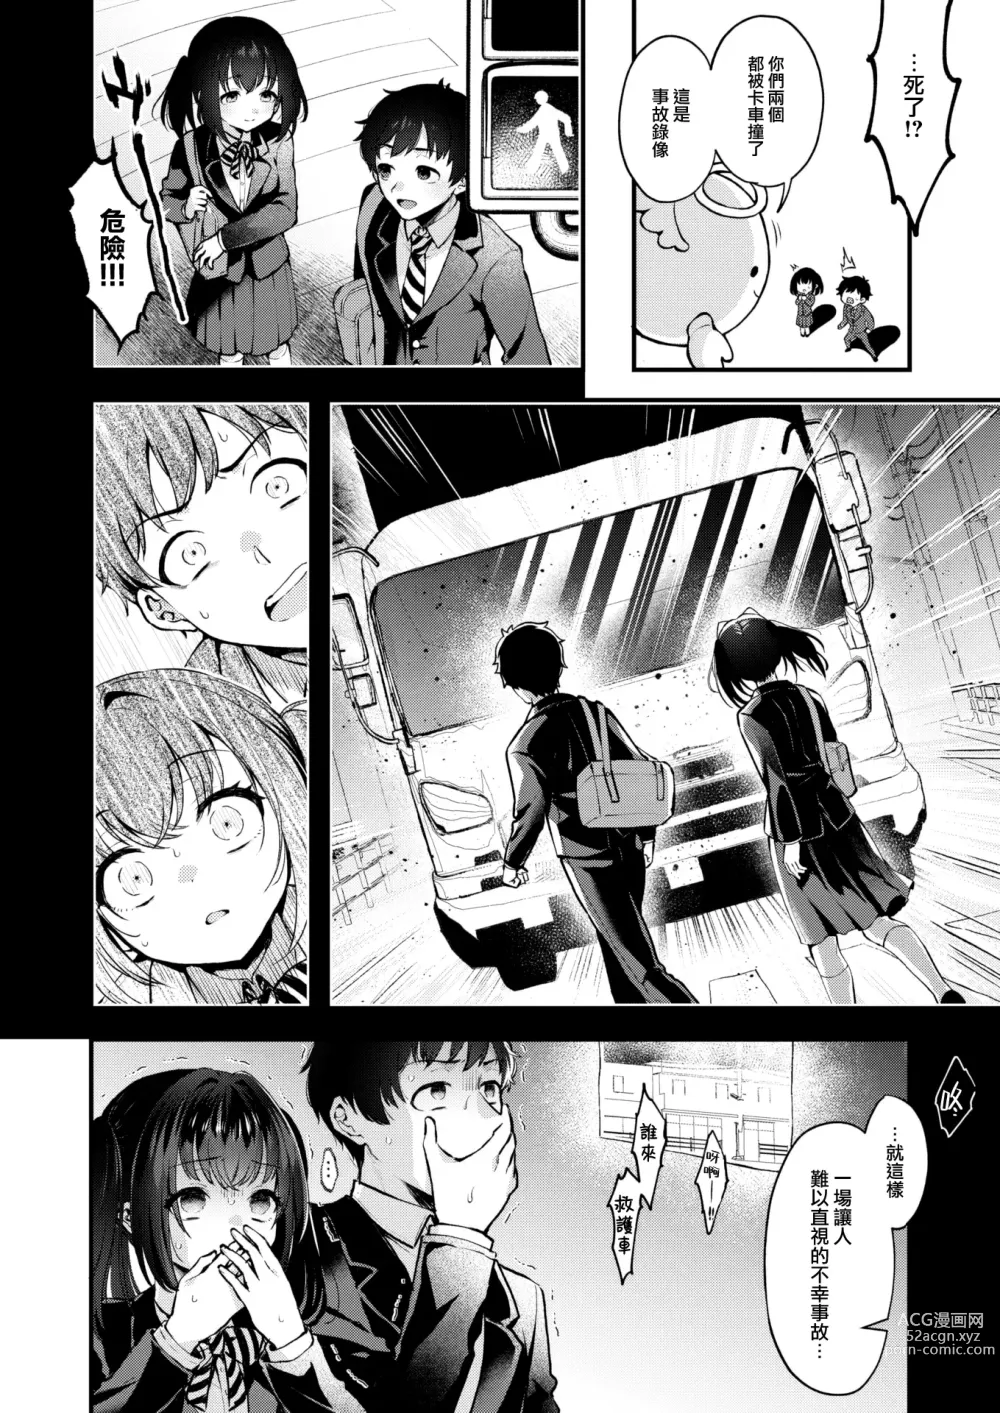 Page 3 of manga Changing!